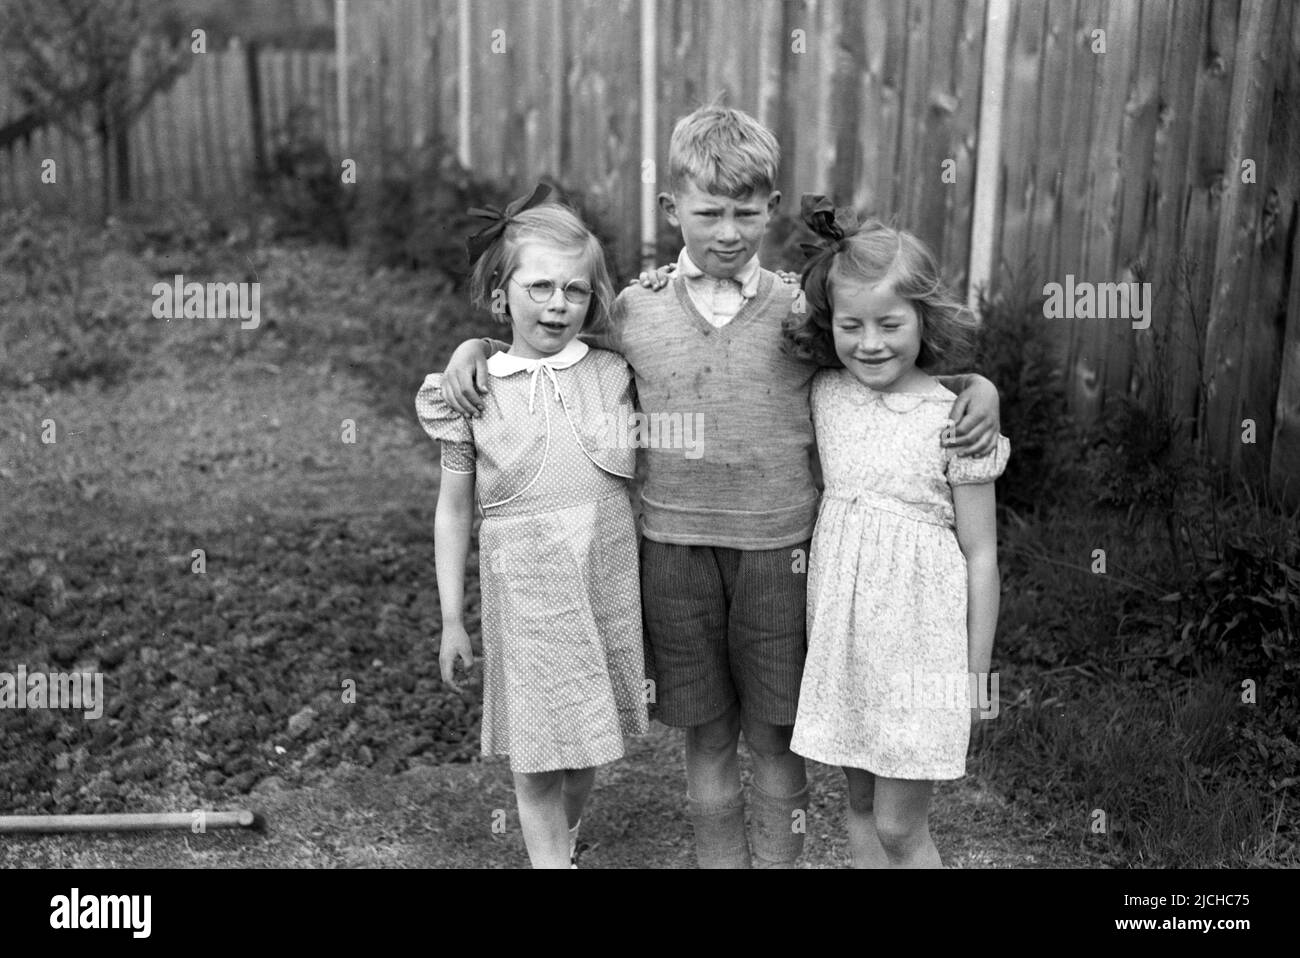 1950s, historique, à l'extérieur dans le jardin arrière, un jeune garçon debout avec ses bras autour de ses deux sœurs plus jeunes, une souriante, avec ses yeux fermés, ..ne regardez pas! Angleterre, Royaume-Uni. Banque D'Images